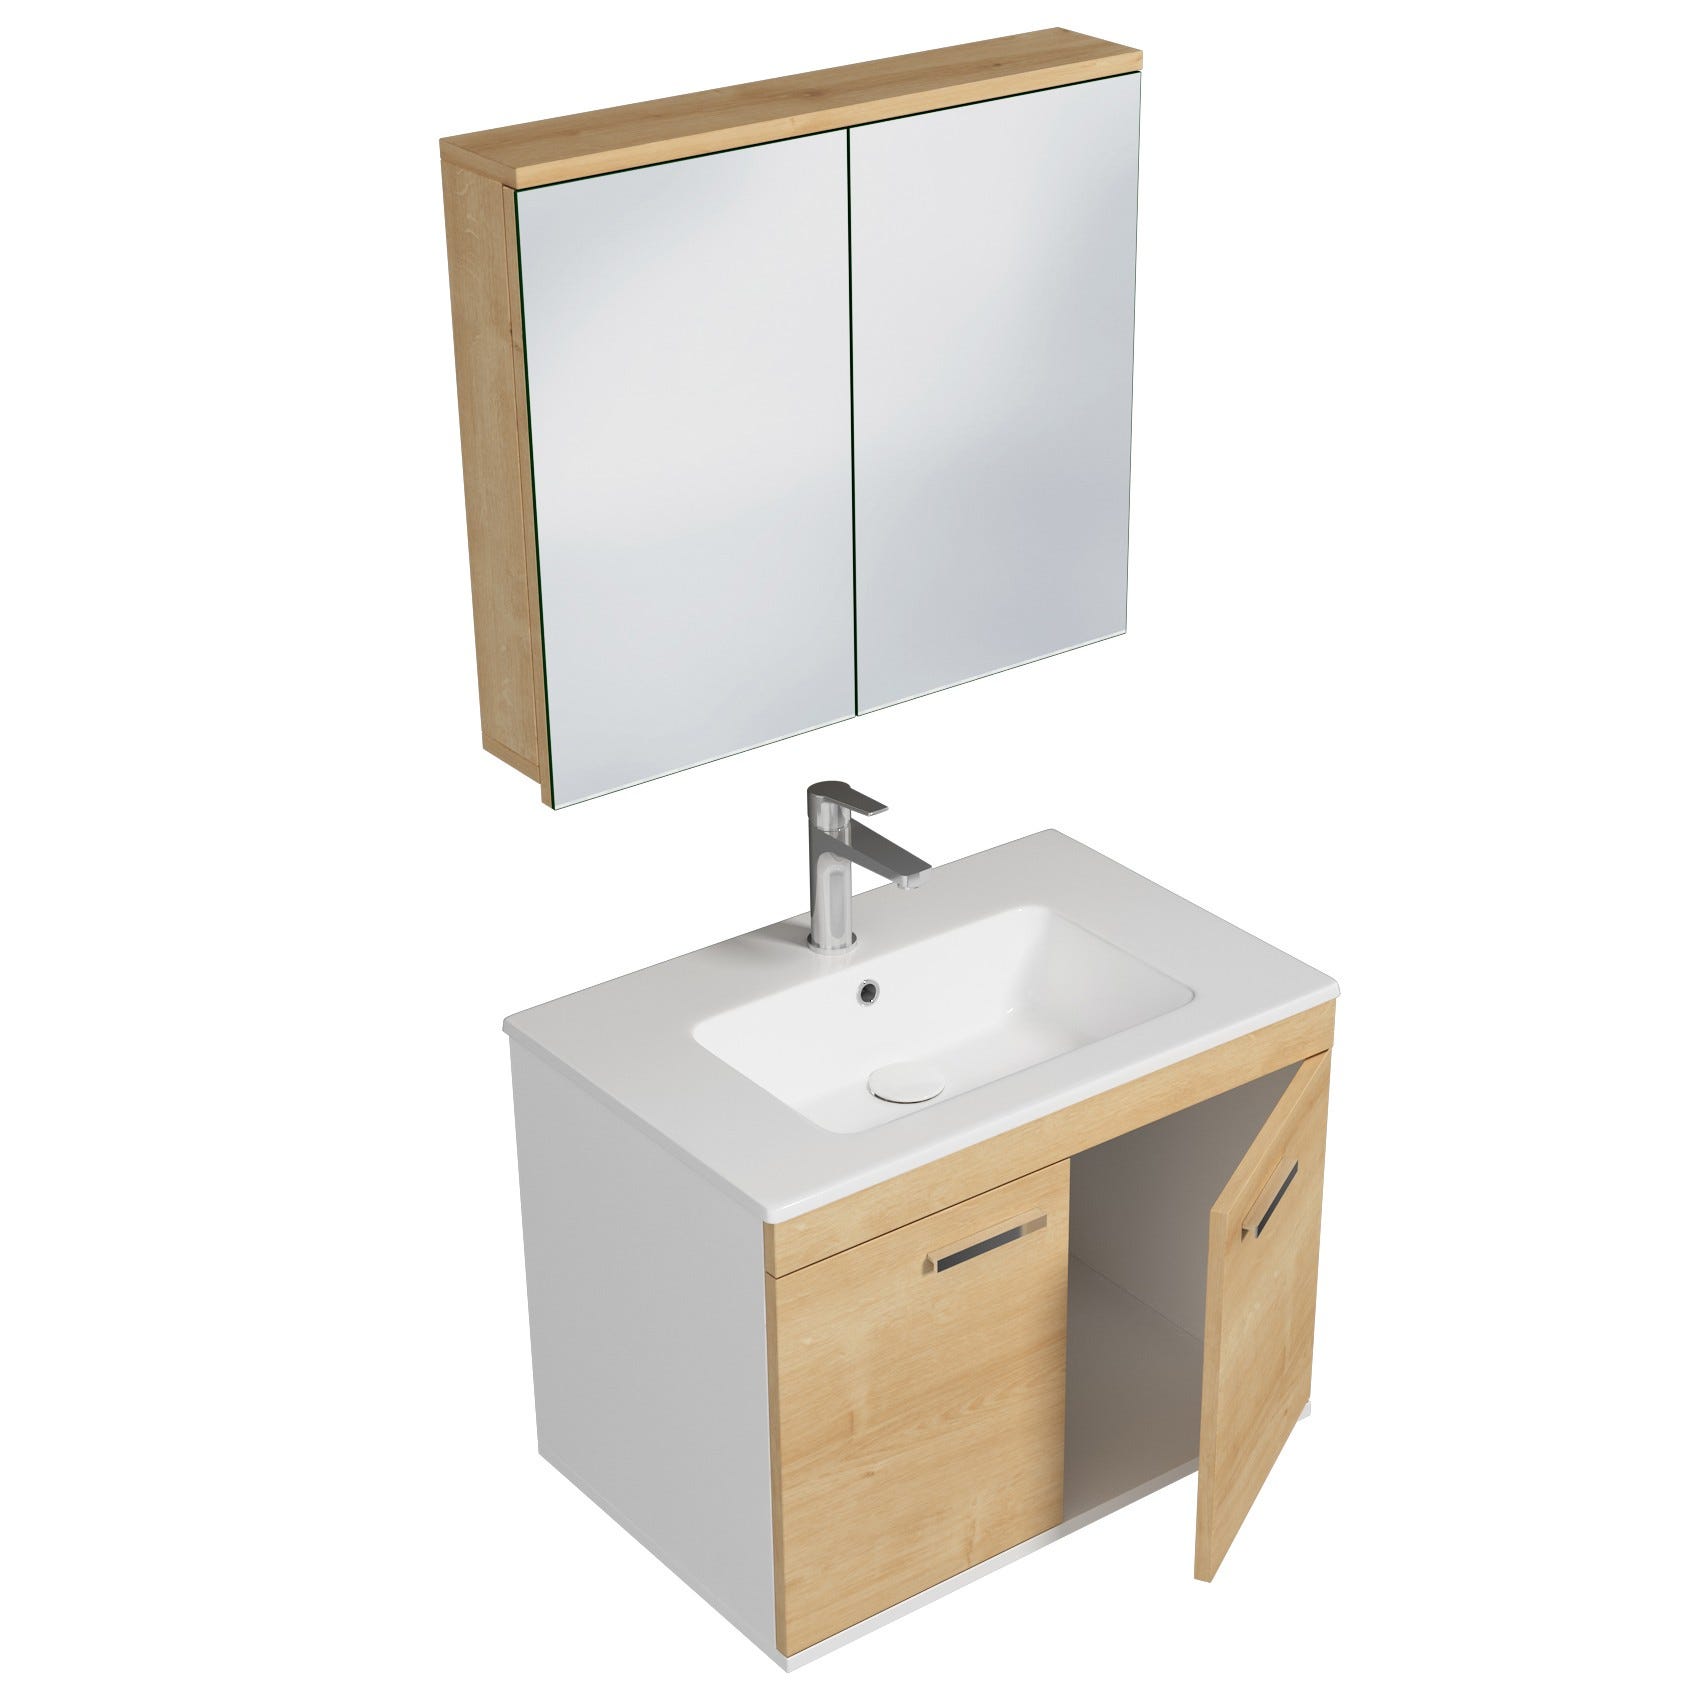 RUBITE Meuble salle de bain simple vasque 2 portes chêne clair largeur 70 cm + miroir armoire 1